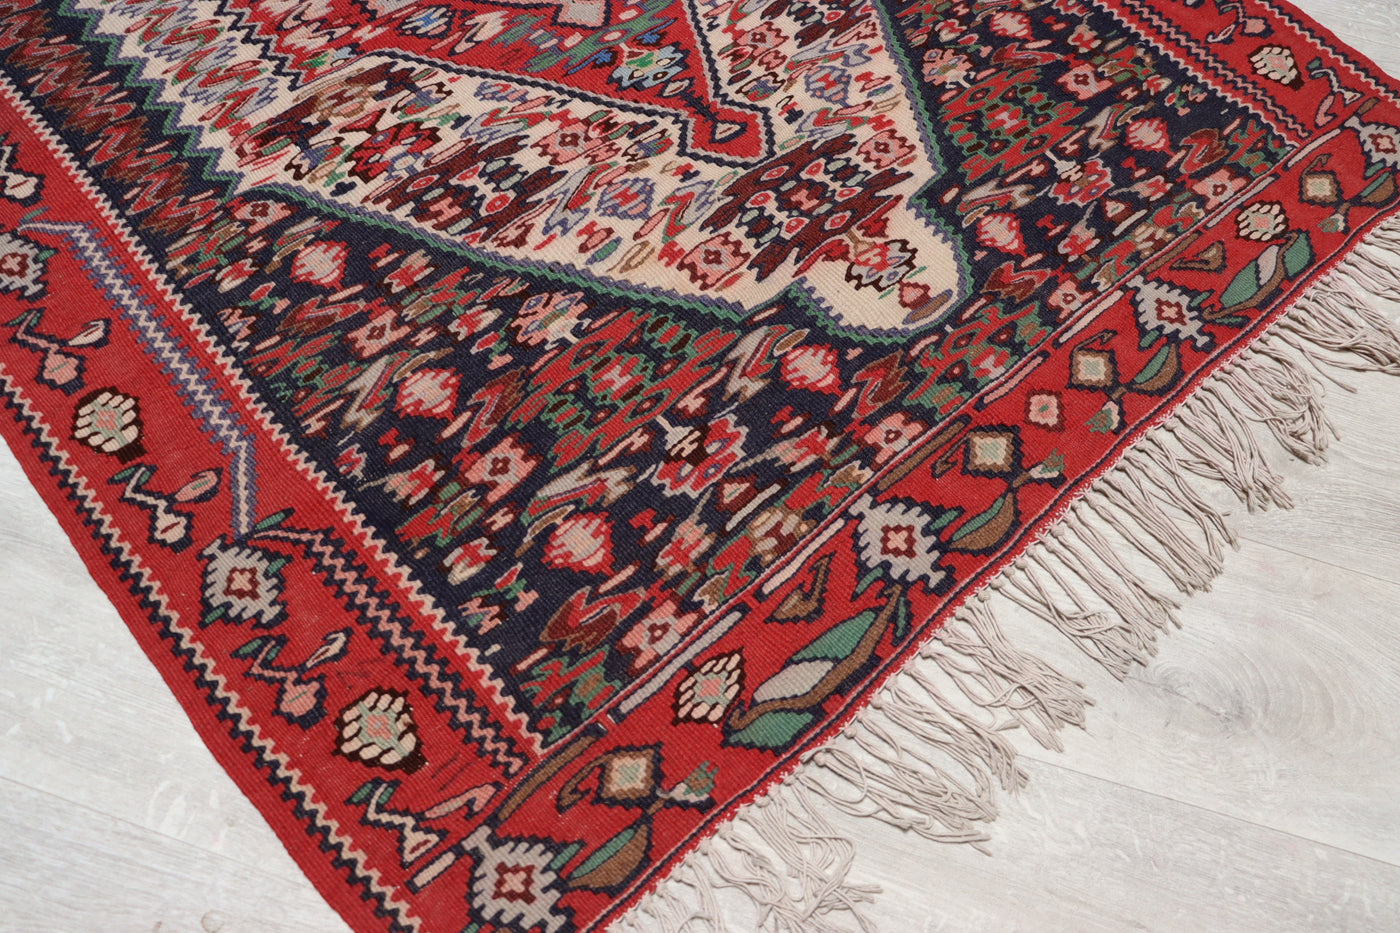 150x115 cm Antik handgewebte orient Teppich Nomaden kelim  saneh no:25 Teppiche Orientsbazar   